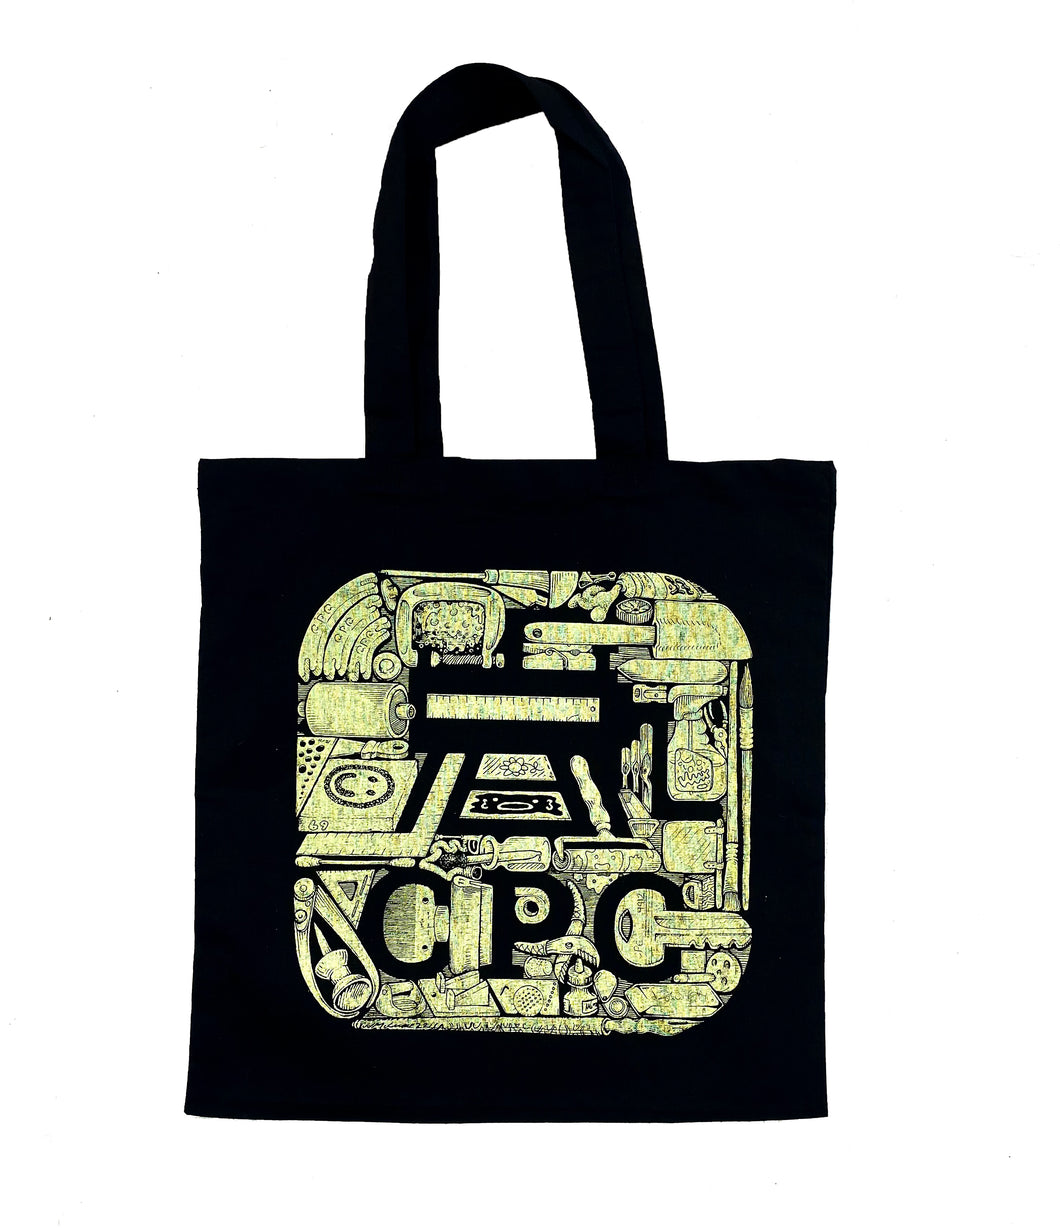 CPC Tote Bag